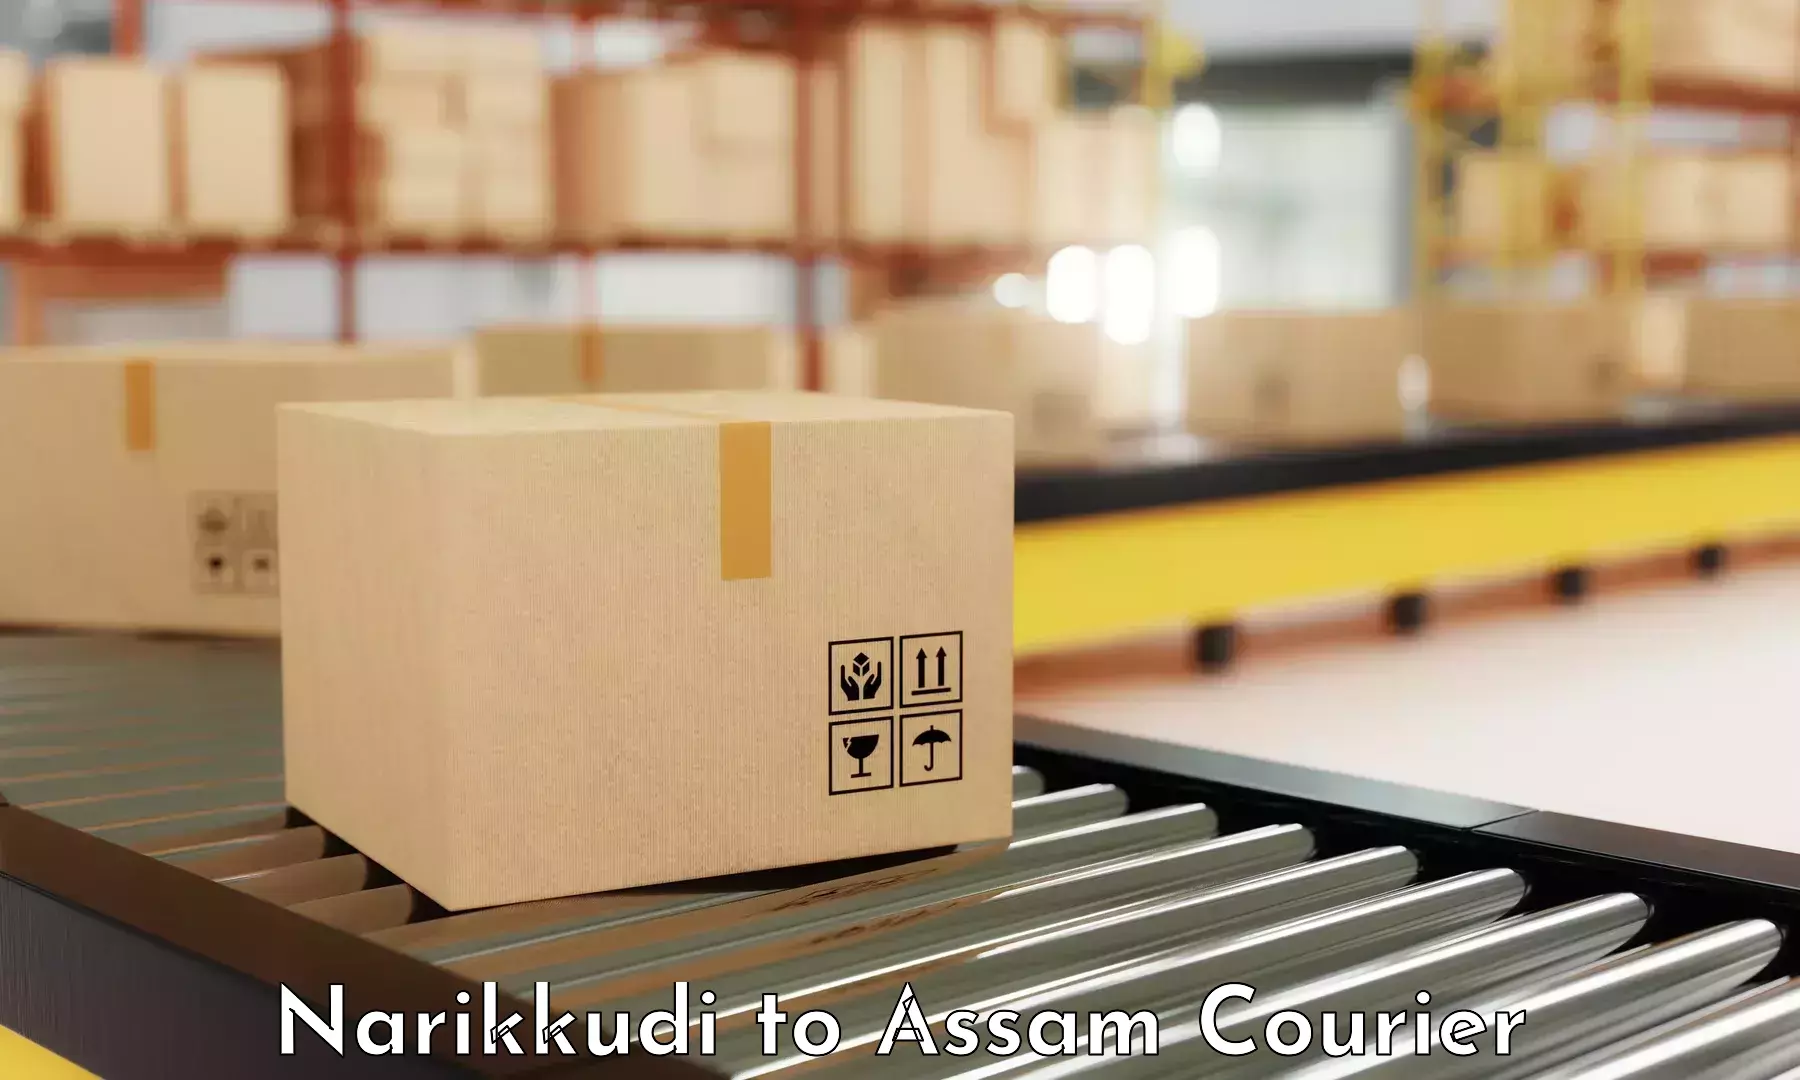 Specialized shipment handling Narikkudi to Kusumtola